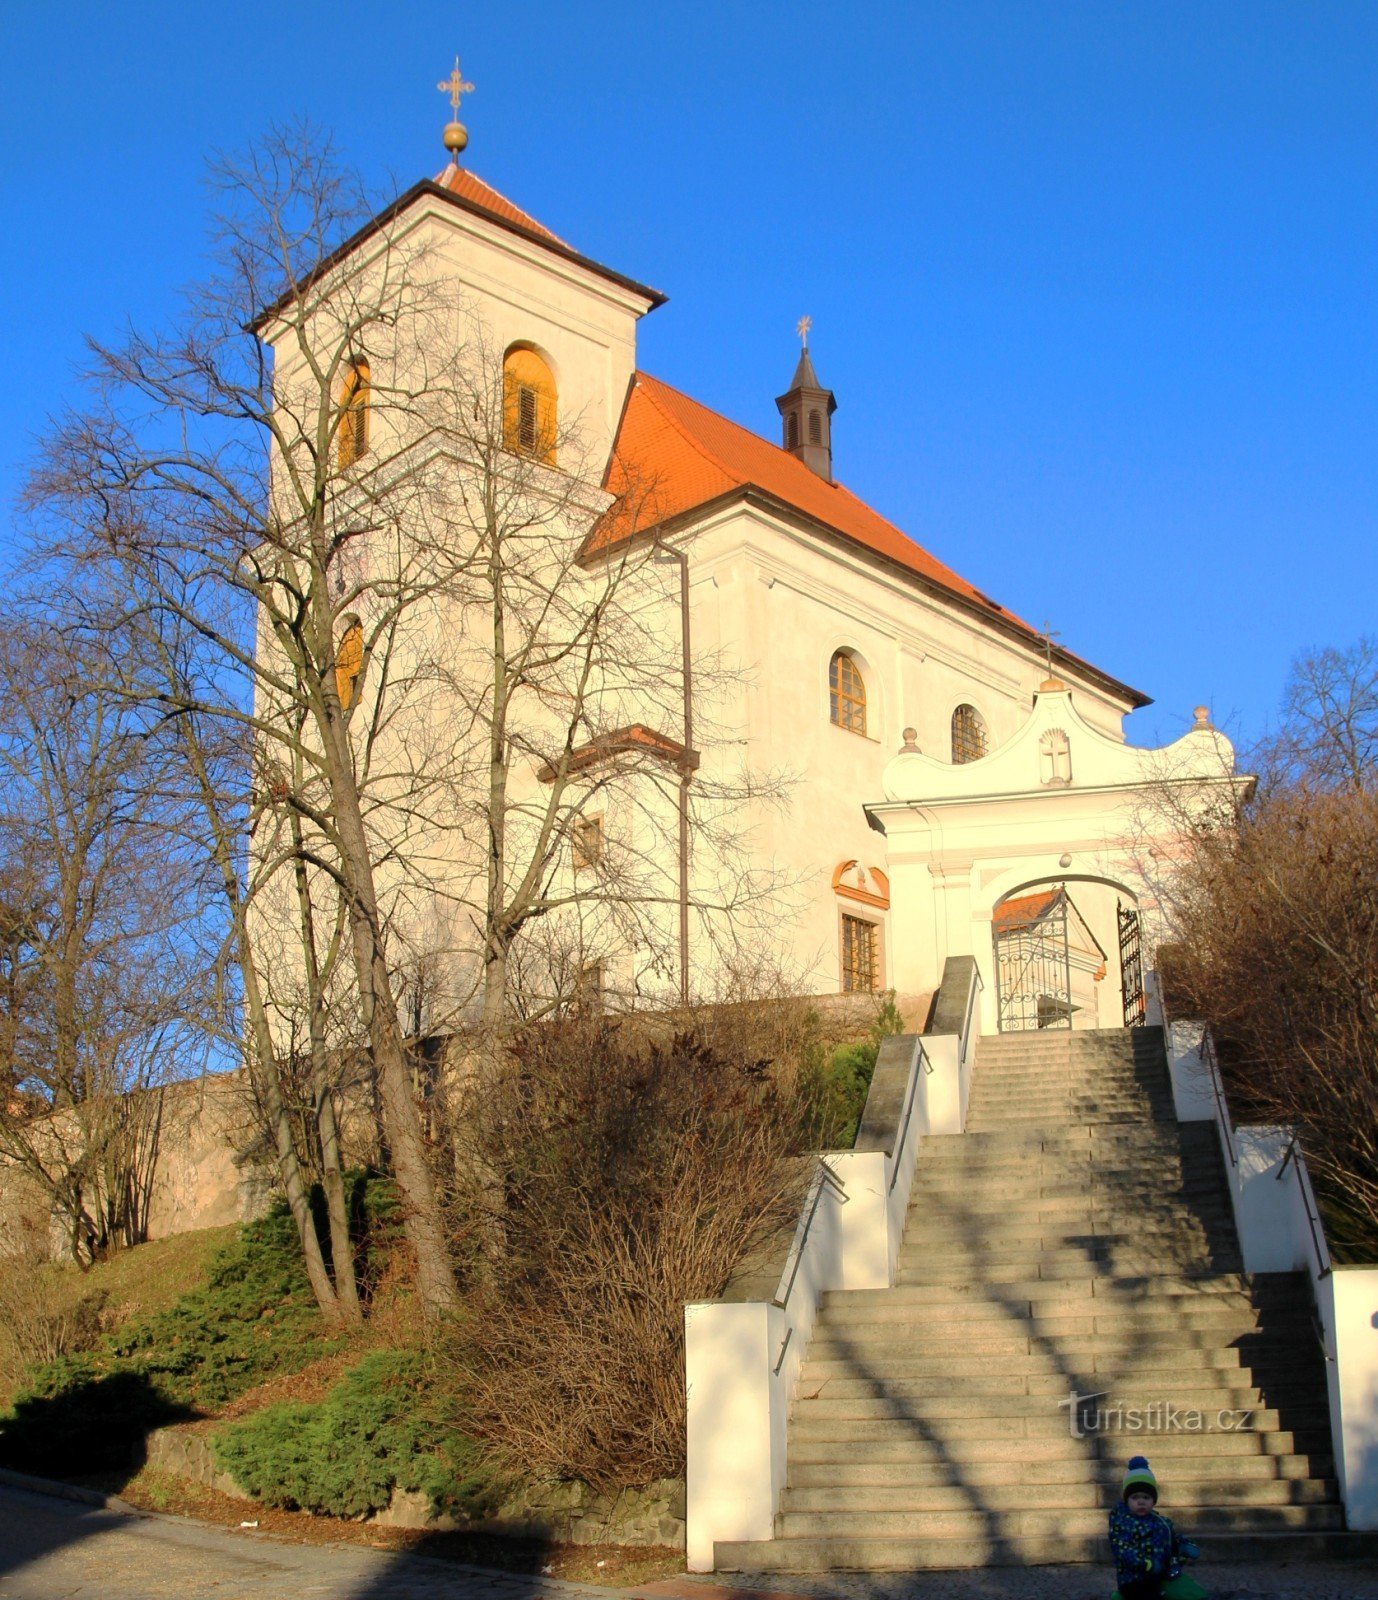 ブルノ・オブラニ - 聖教会ヴァーツラフ